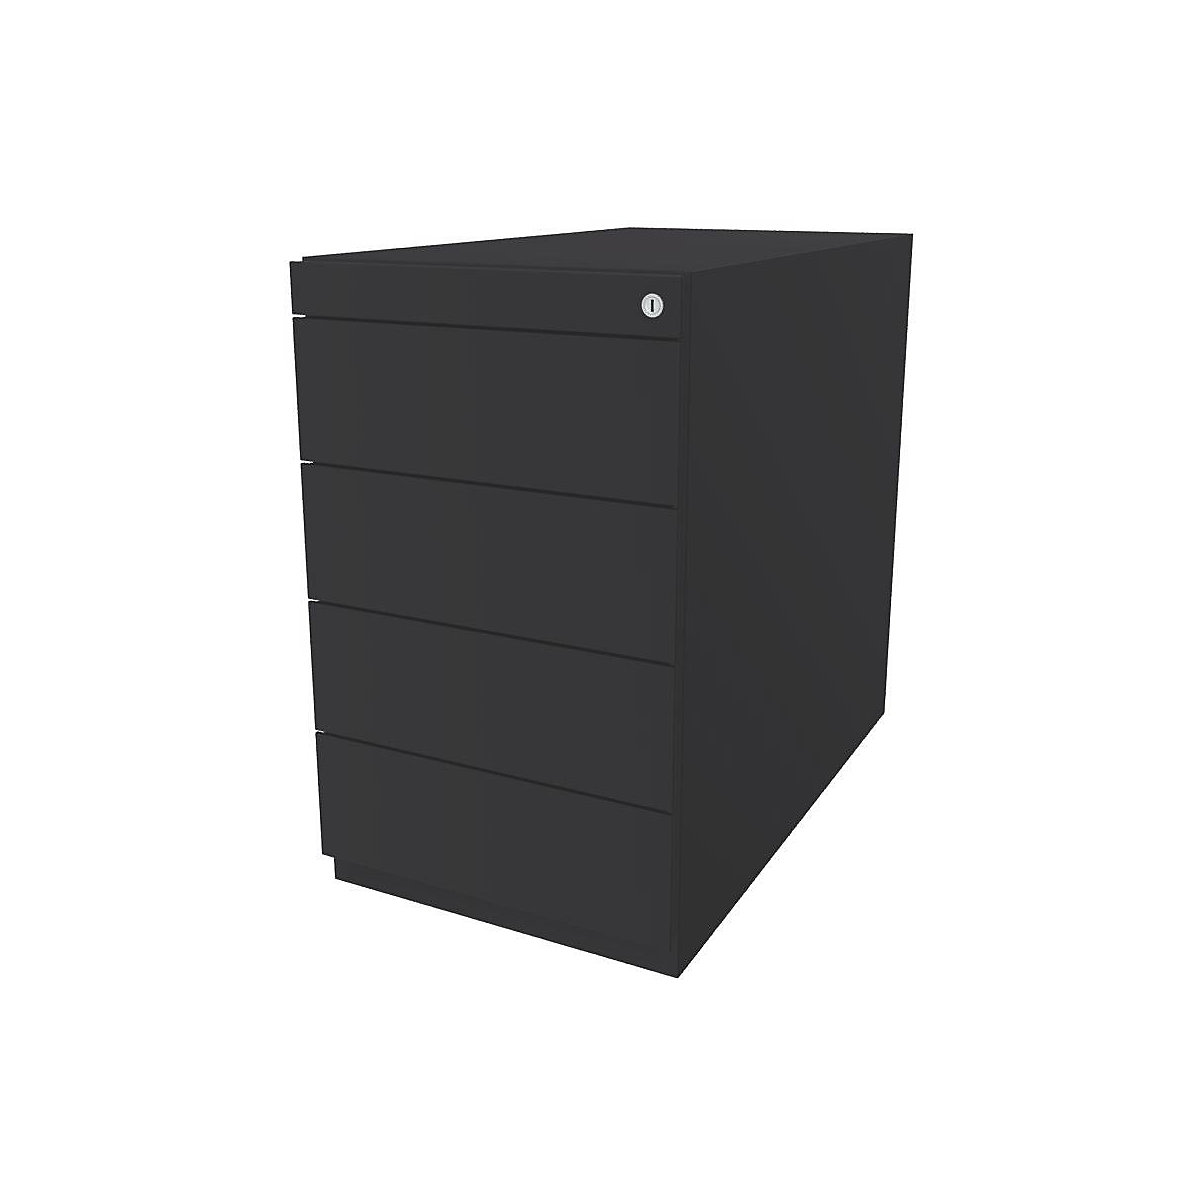 Stacionarni predalnik Note™, s 4 univerzalnimi predali – BISLEY, globina 775 mm, antracitno siv-5